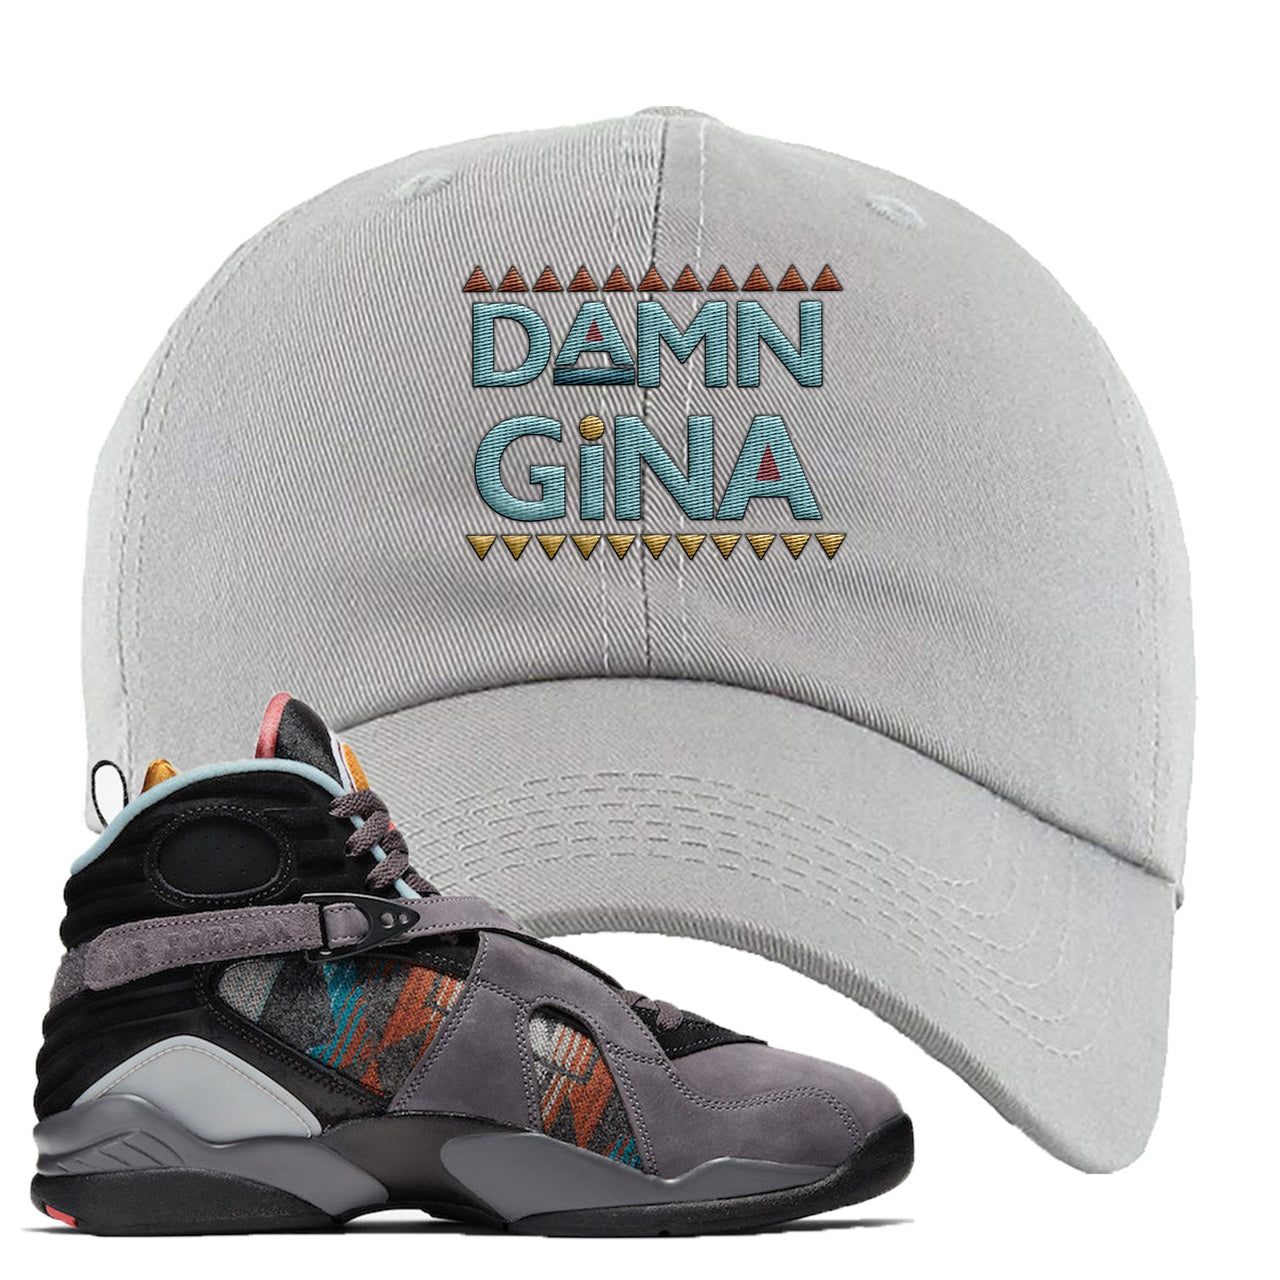 Jordan 8 N7 Pendleton Damn Gina Light Gray Sneaker Hook Up Dad Hat